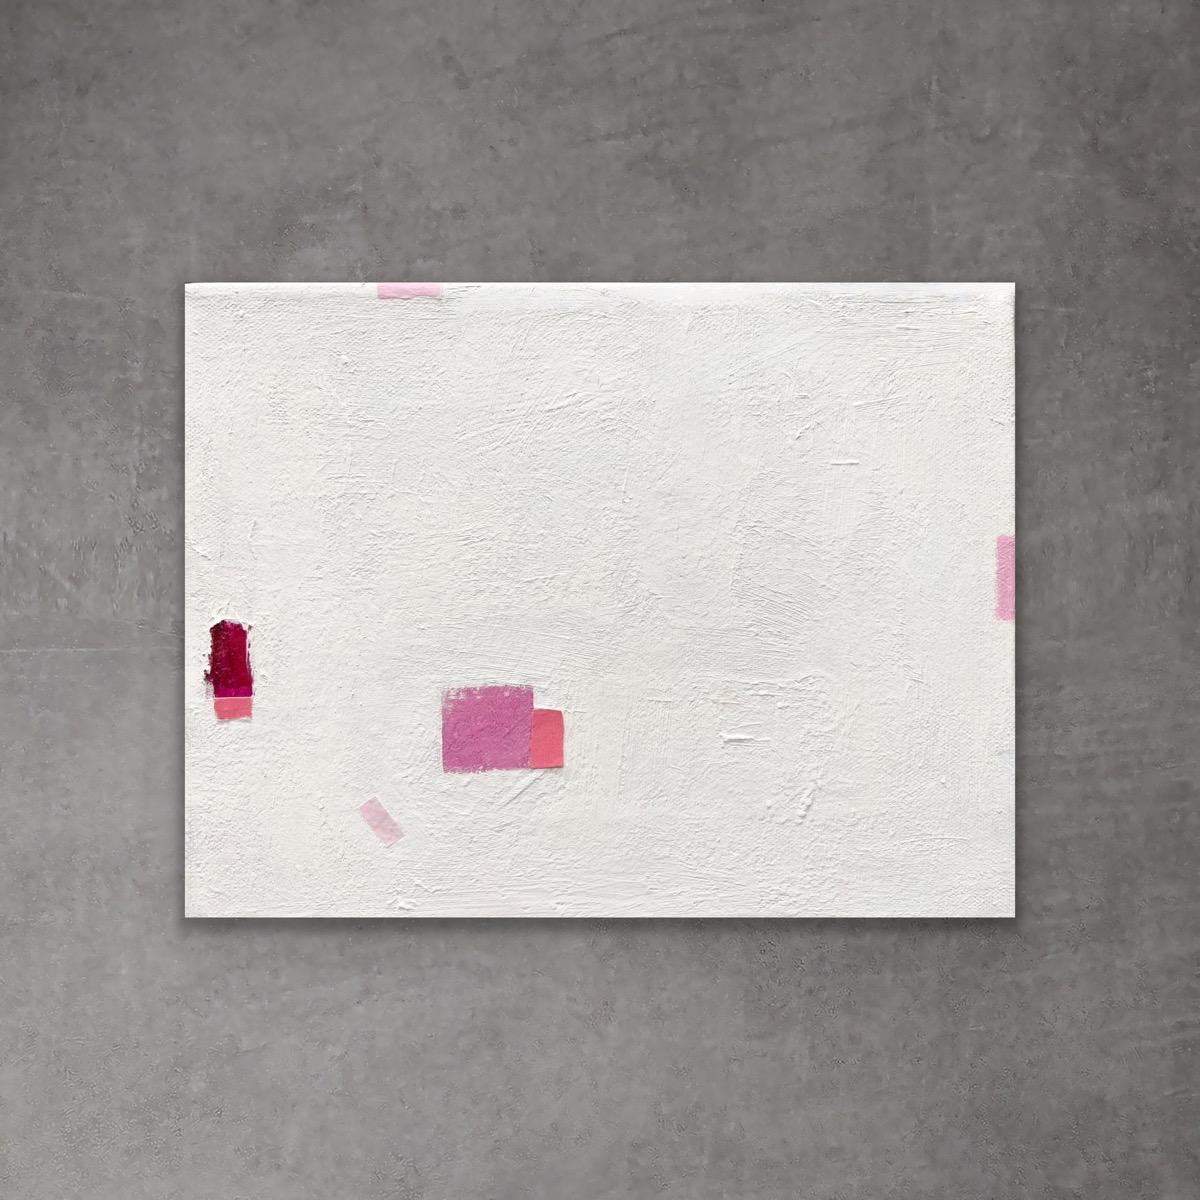 Rosa Dinge - 8"x10", Rosa und Weiß, minimalistisches abstraktes Gemälde